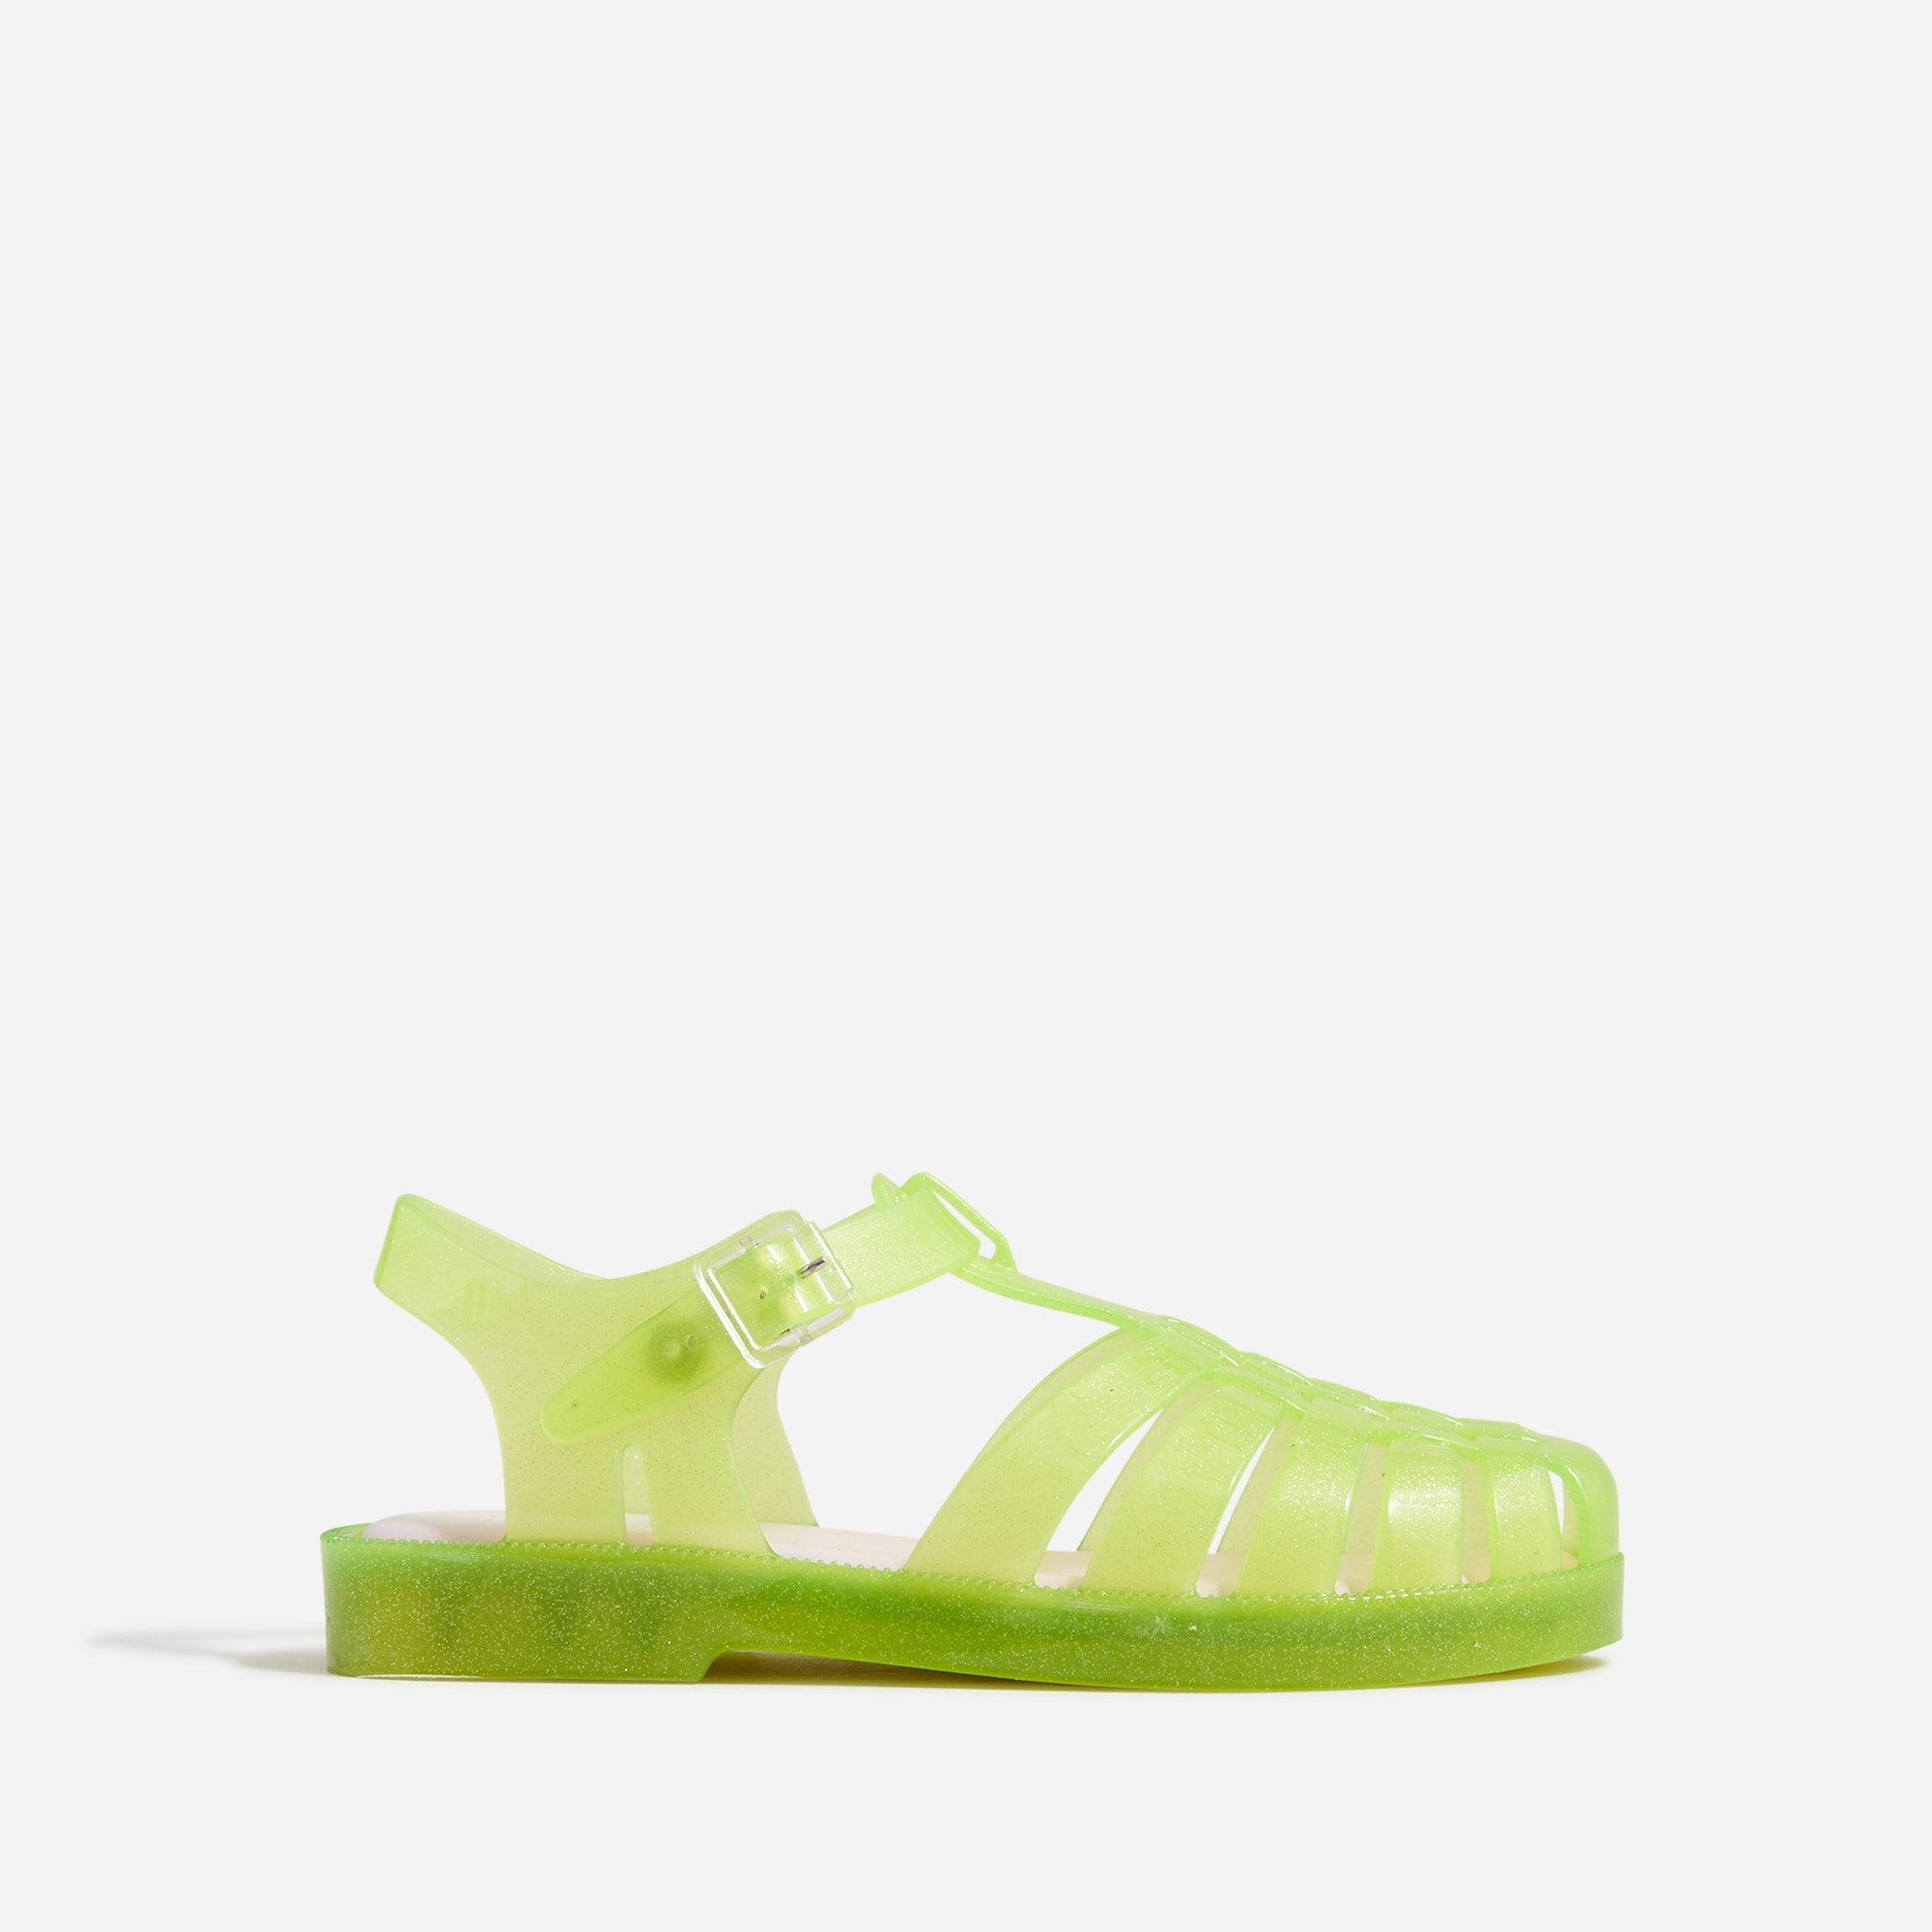  Limited-edition Mini Melissa&reg; X crewcuts possession glitter jelly sandals